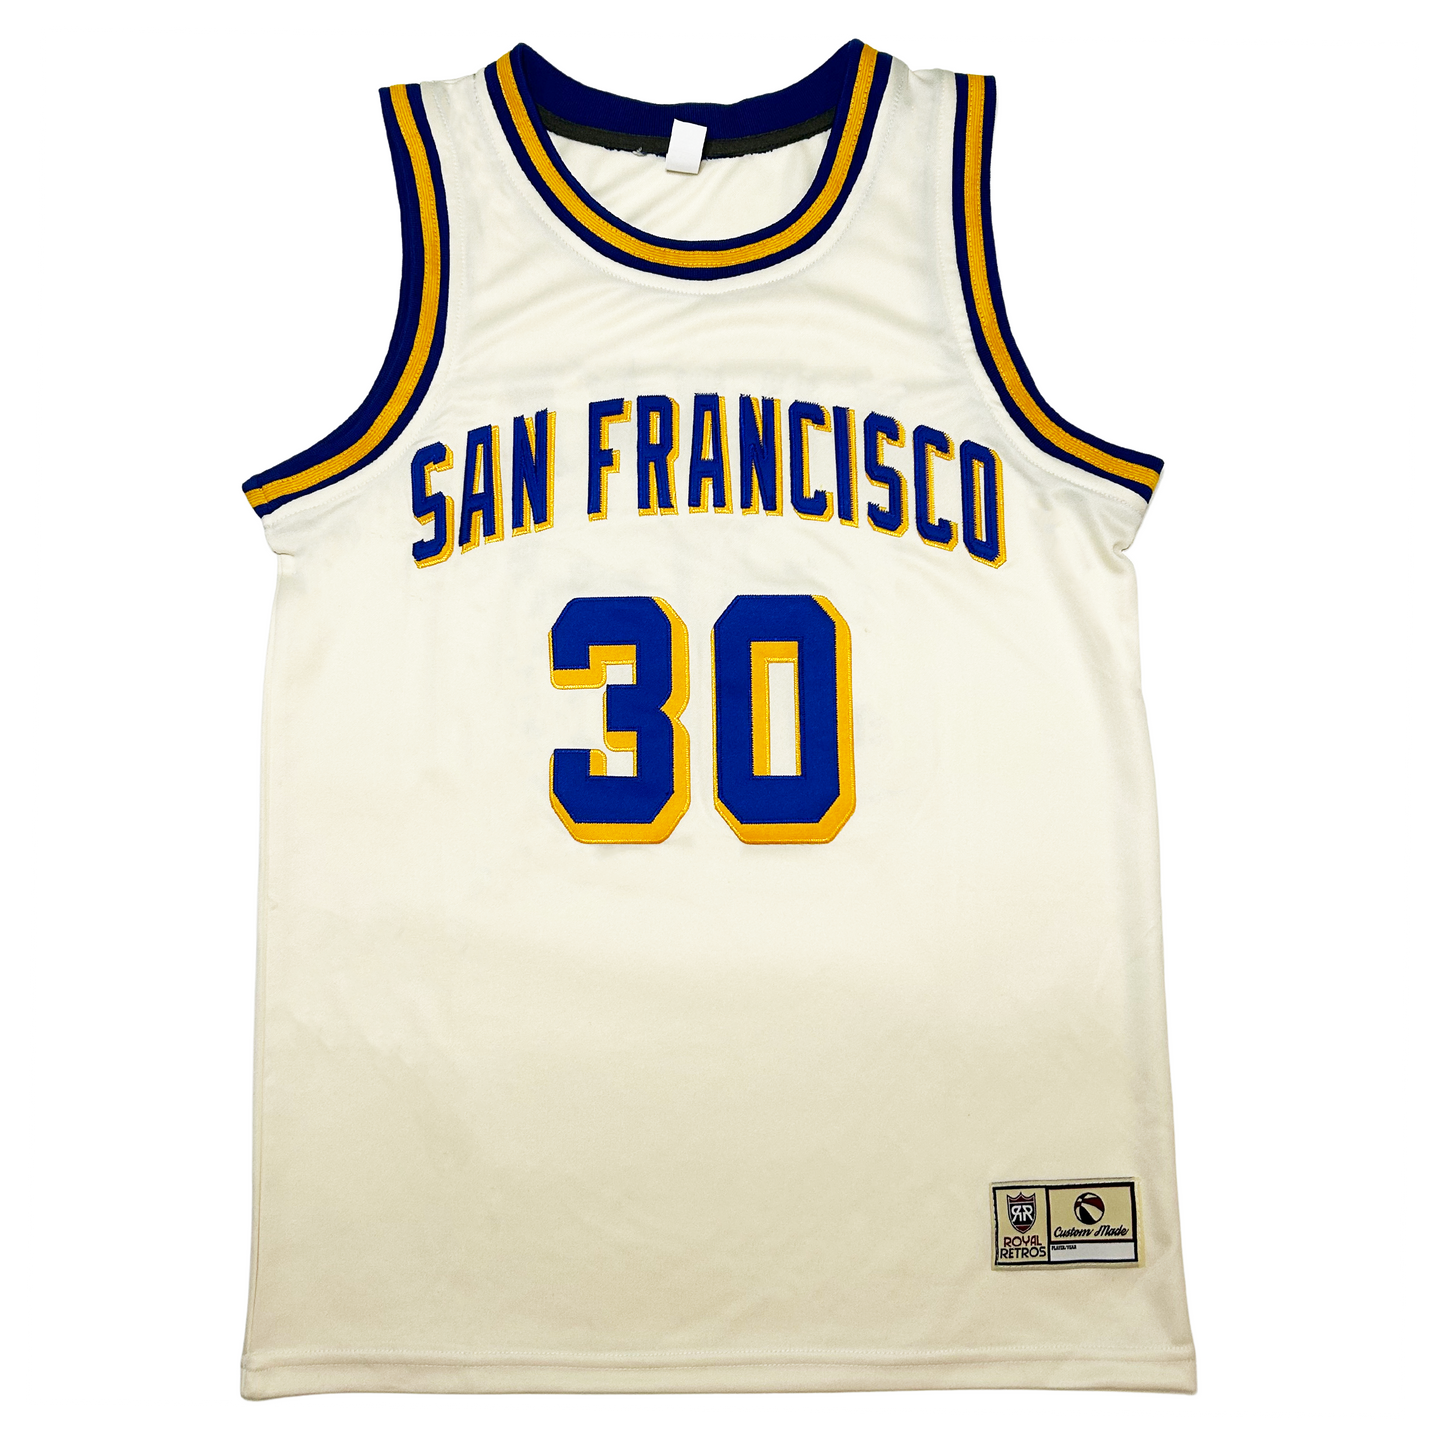 San Francisco Basketball Jersey - White - 4XL - Royal Retros